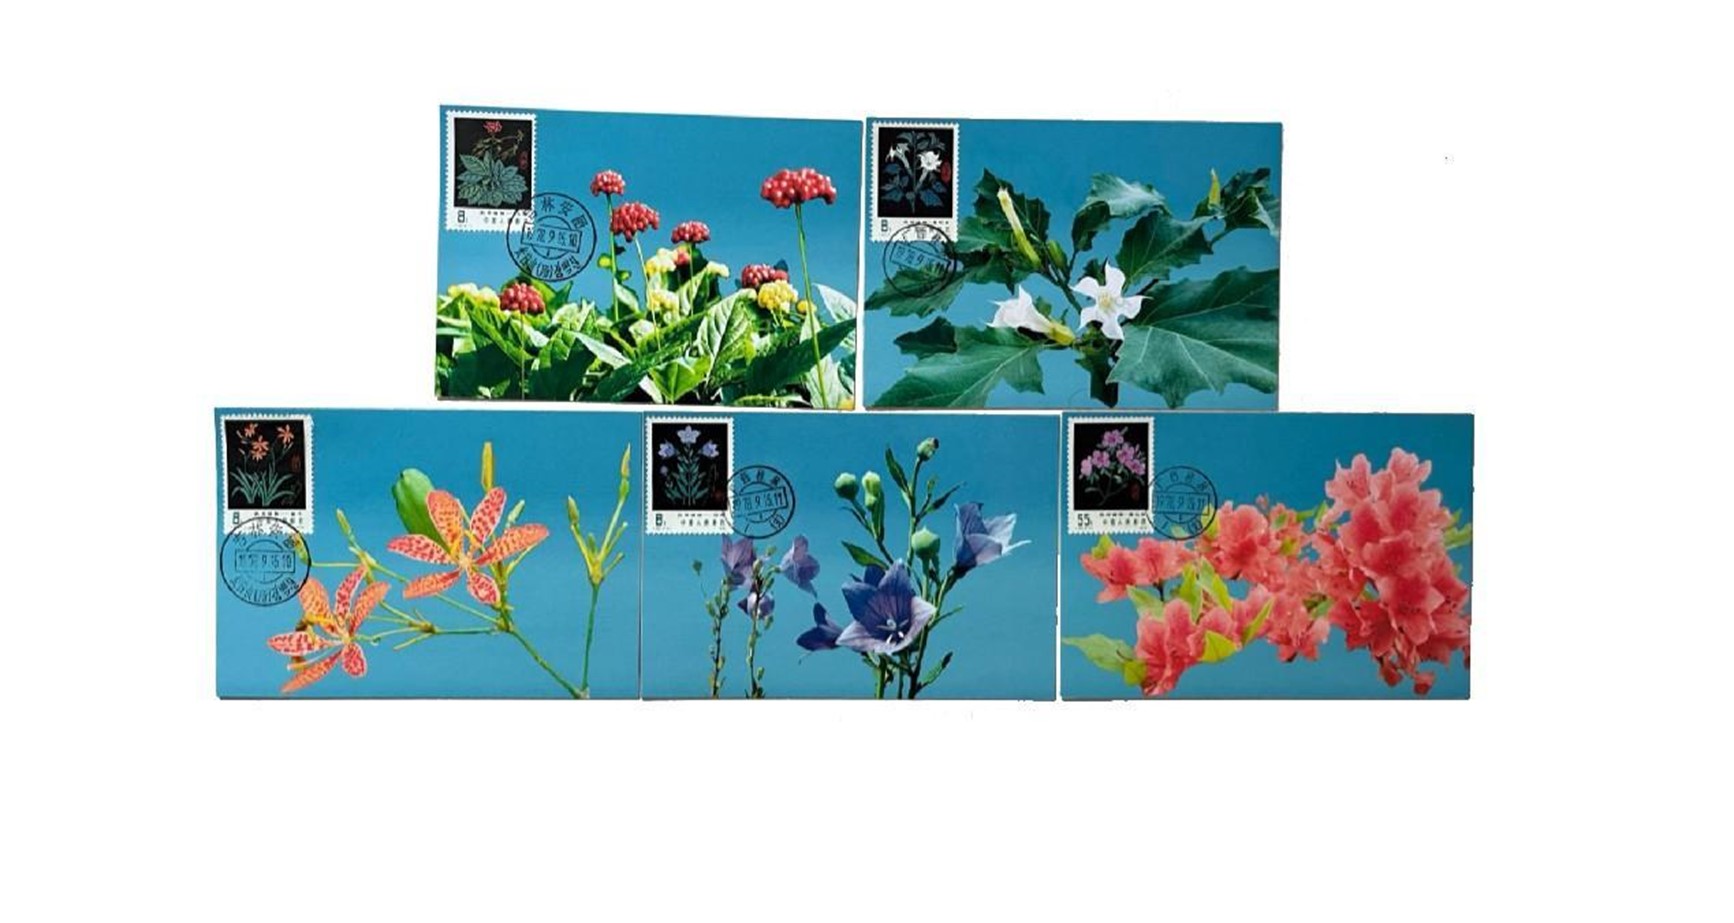 المجموعة الأولى من الطوابع الماكسي كارد للنباتات الطبية. مصدر الصورة / الجهة المنظمة لمعرض الإمارات السابع لهواة الطوابع